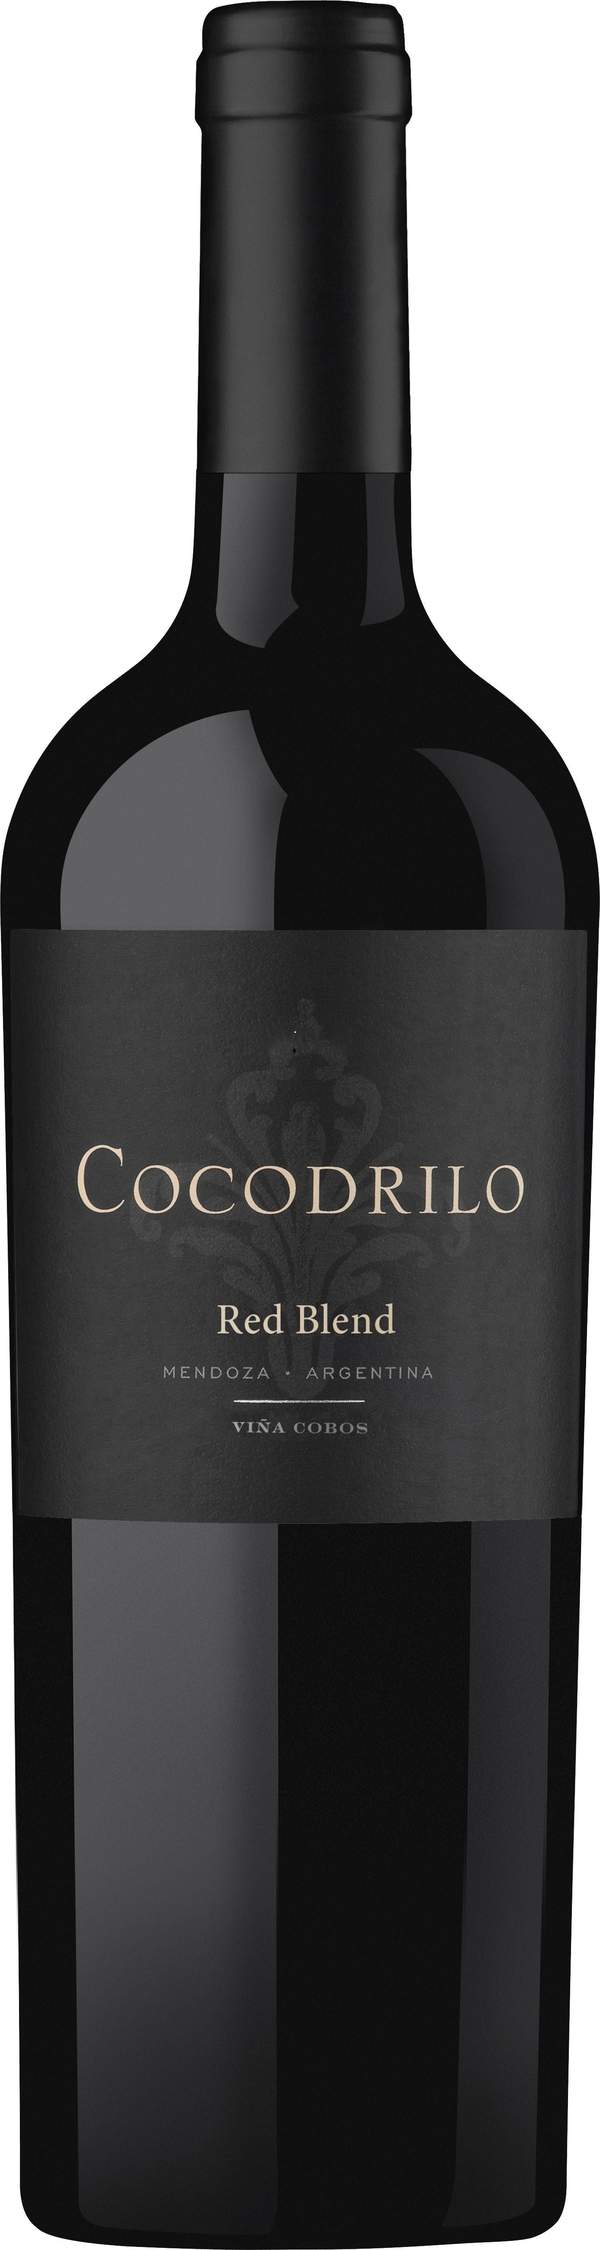 Cocodrilo Corte Red Blend, Mendoza